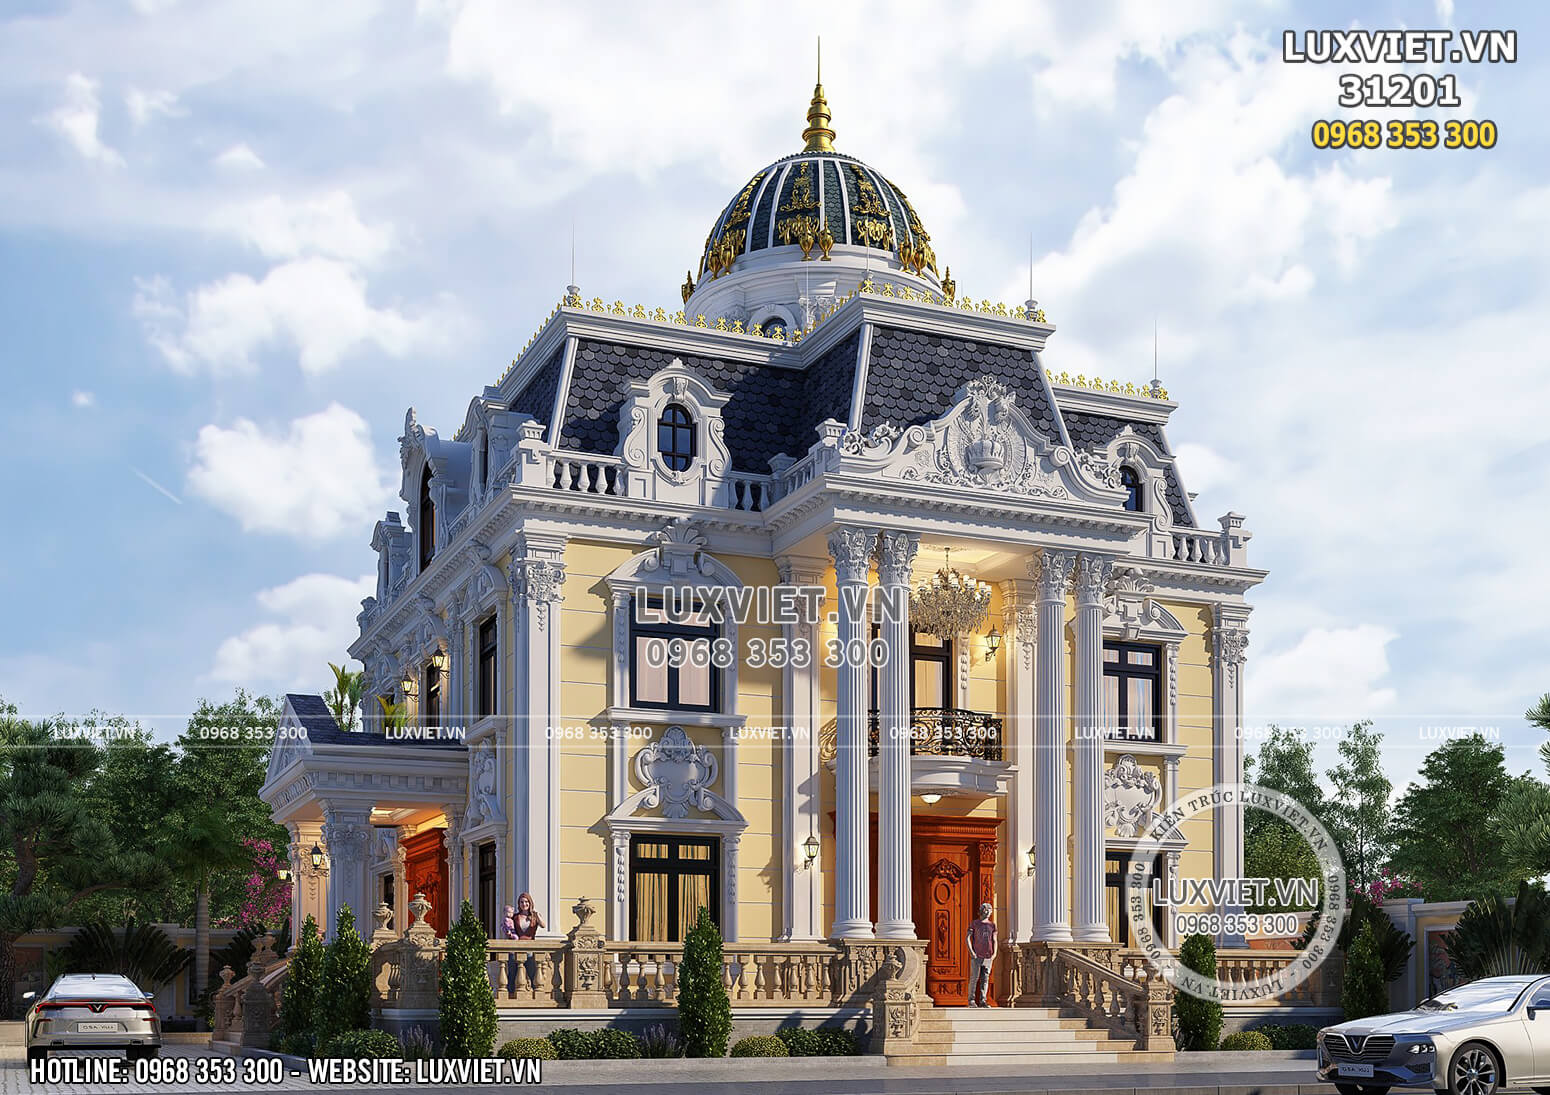 Tham khảo 5 mẫu thiết kế biệt thự kiểu Pháp tiện nghi sang trọng